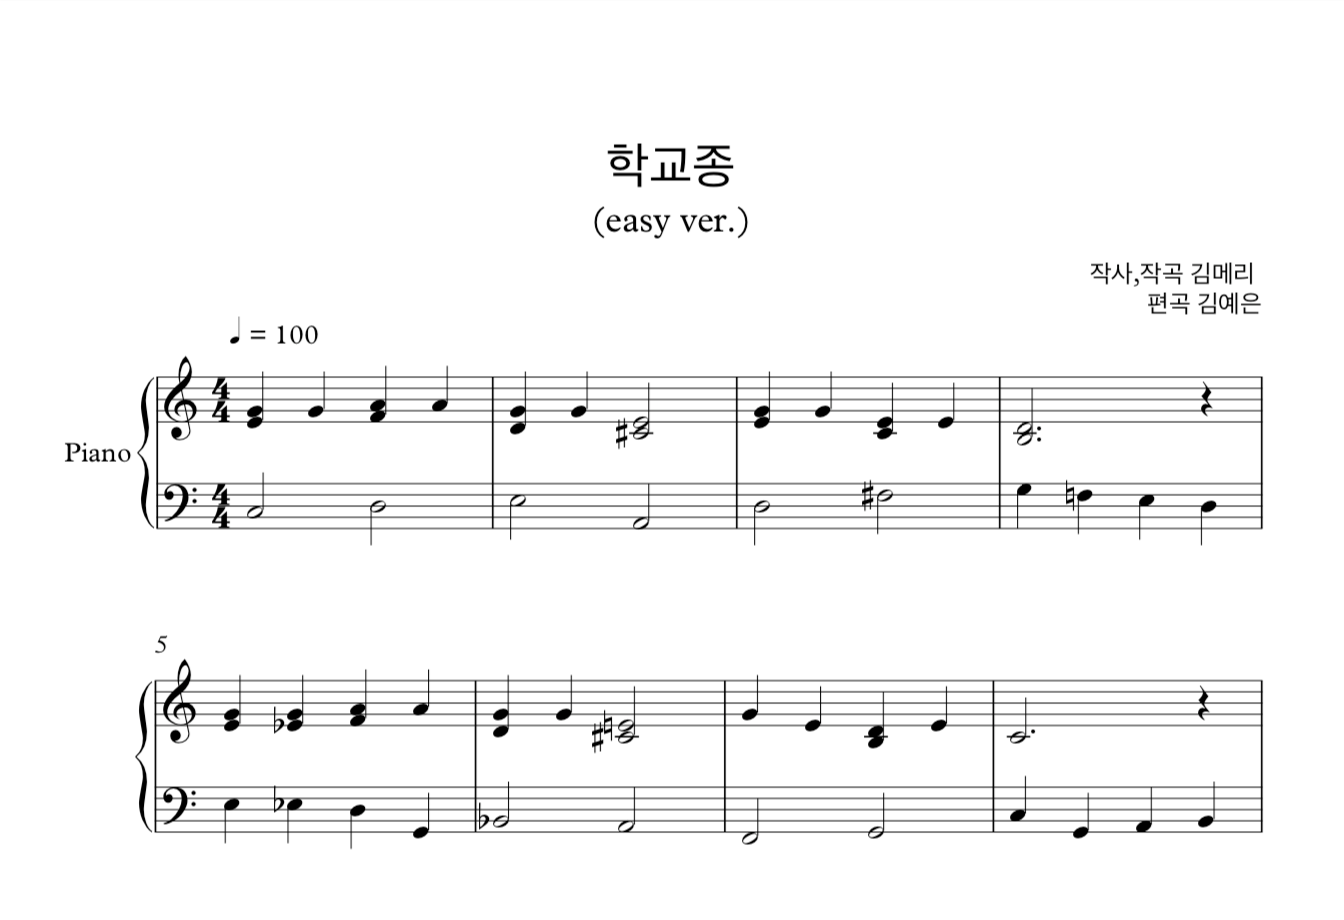 동요 학교종 재즈 버전 (김메리) 피아노 솔로 쉬운버전 악보